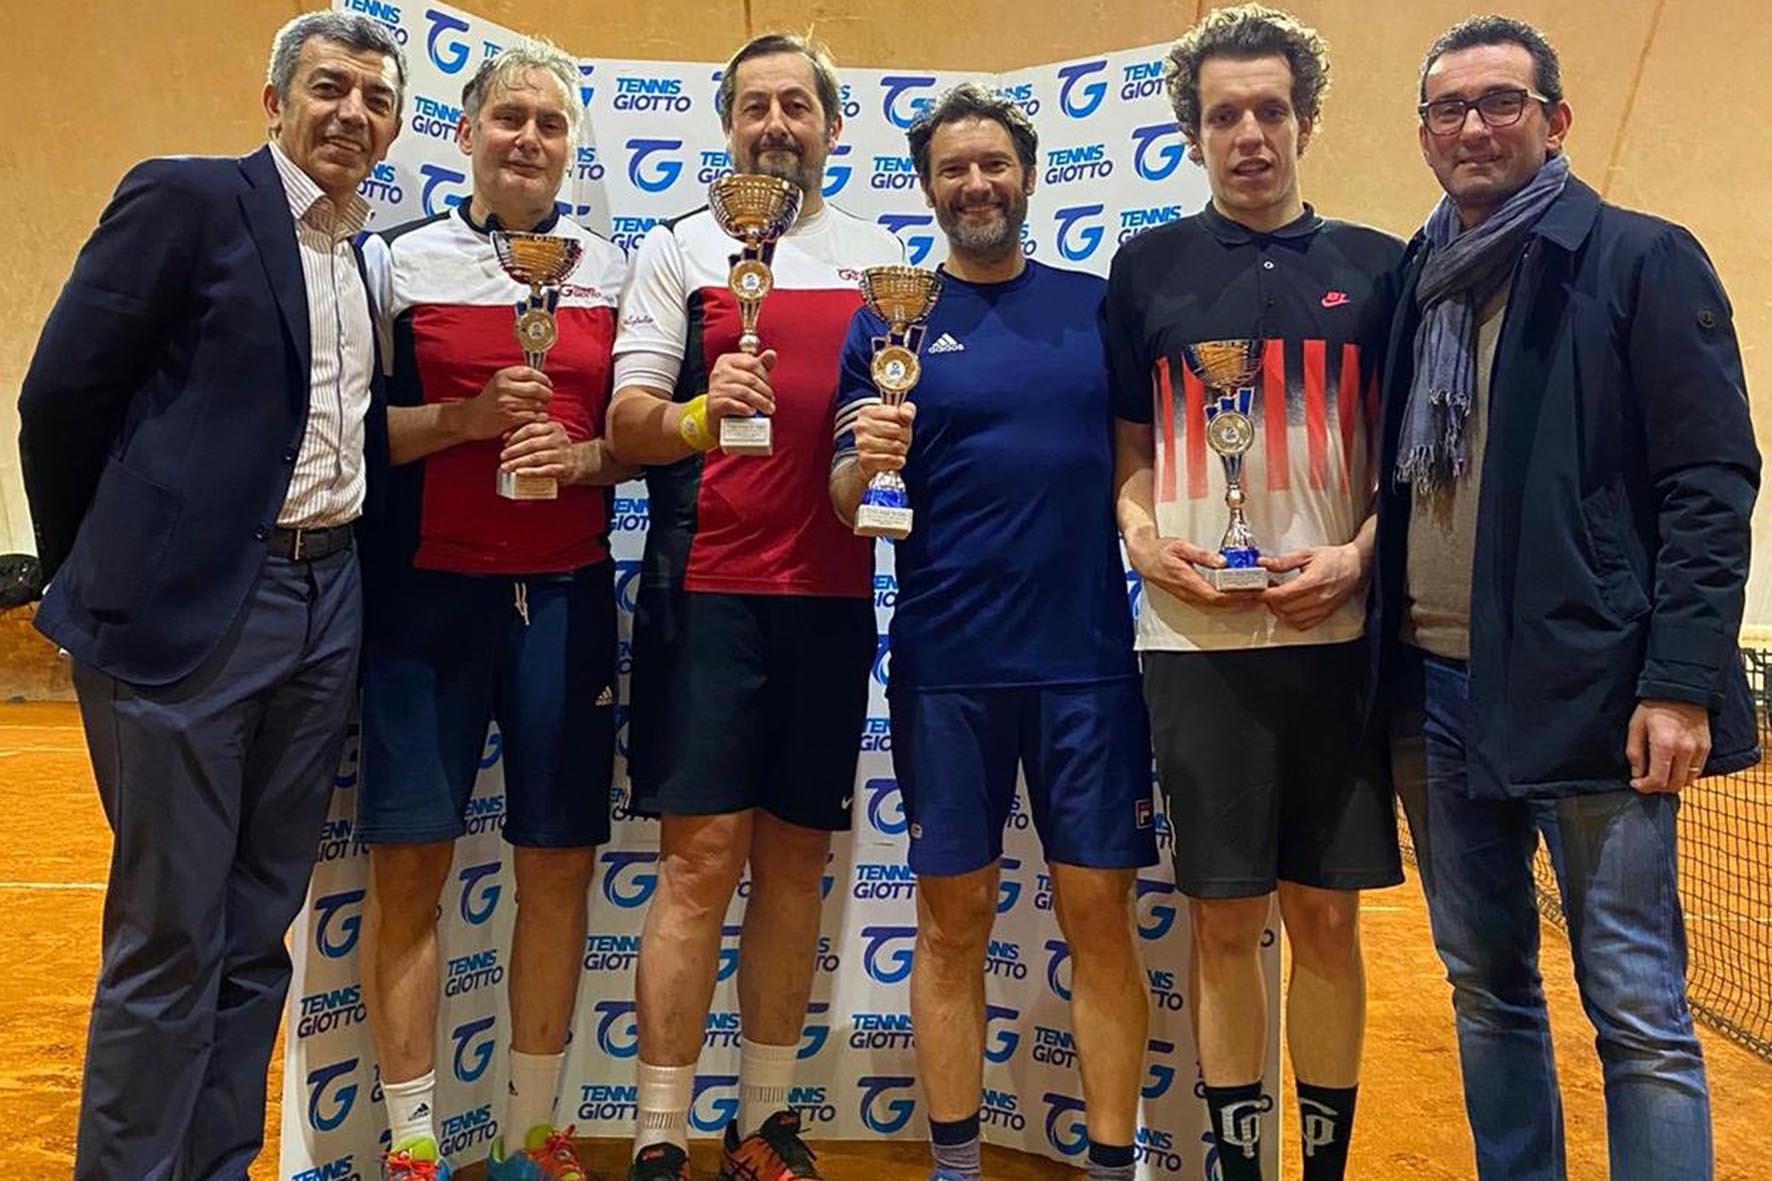 Doppietta del Tennis Giotto ai campionati provinciali di Quarta Categoria